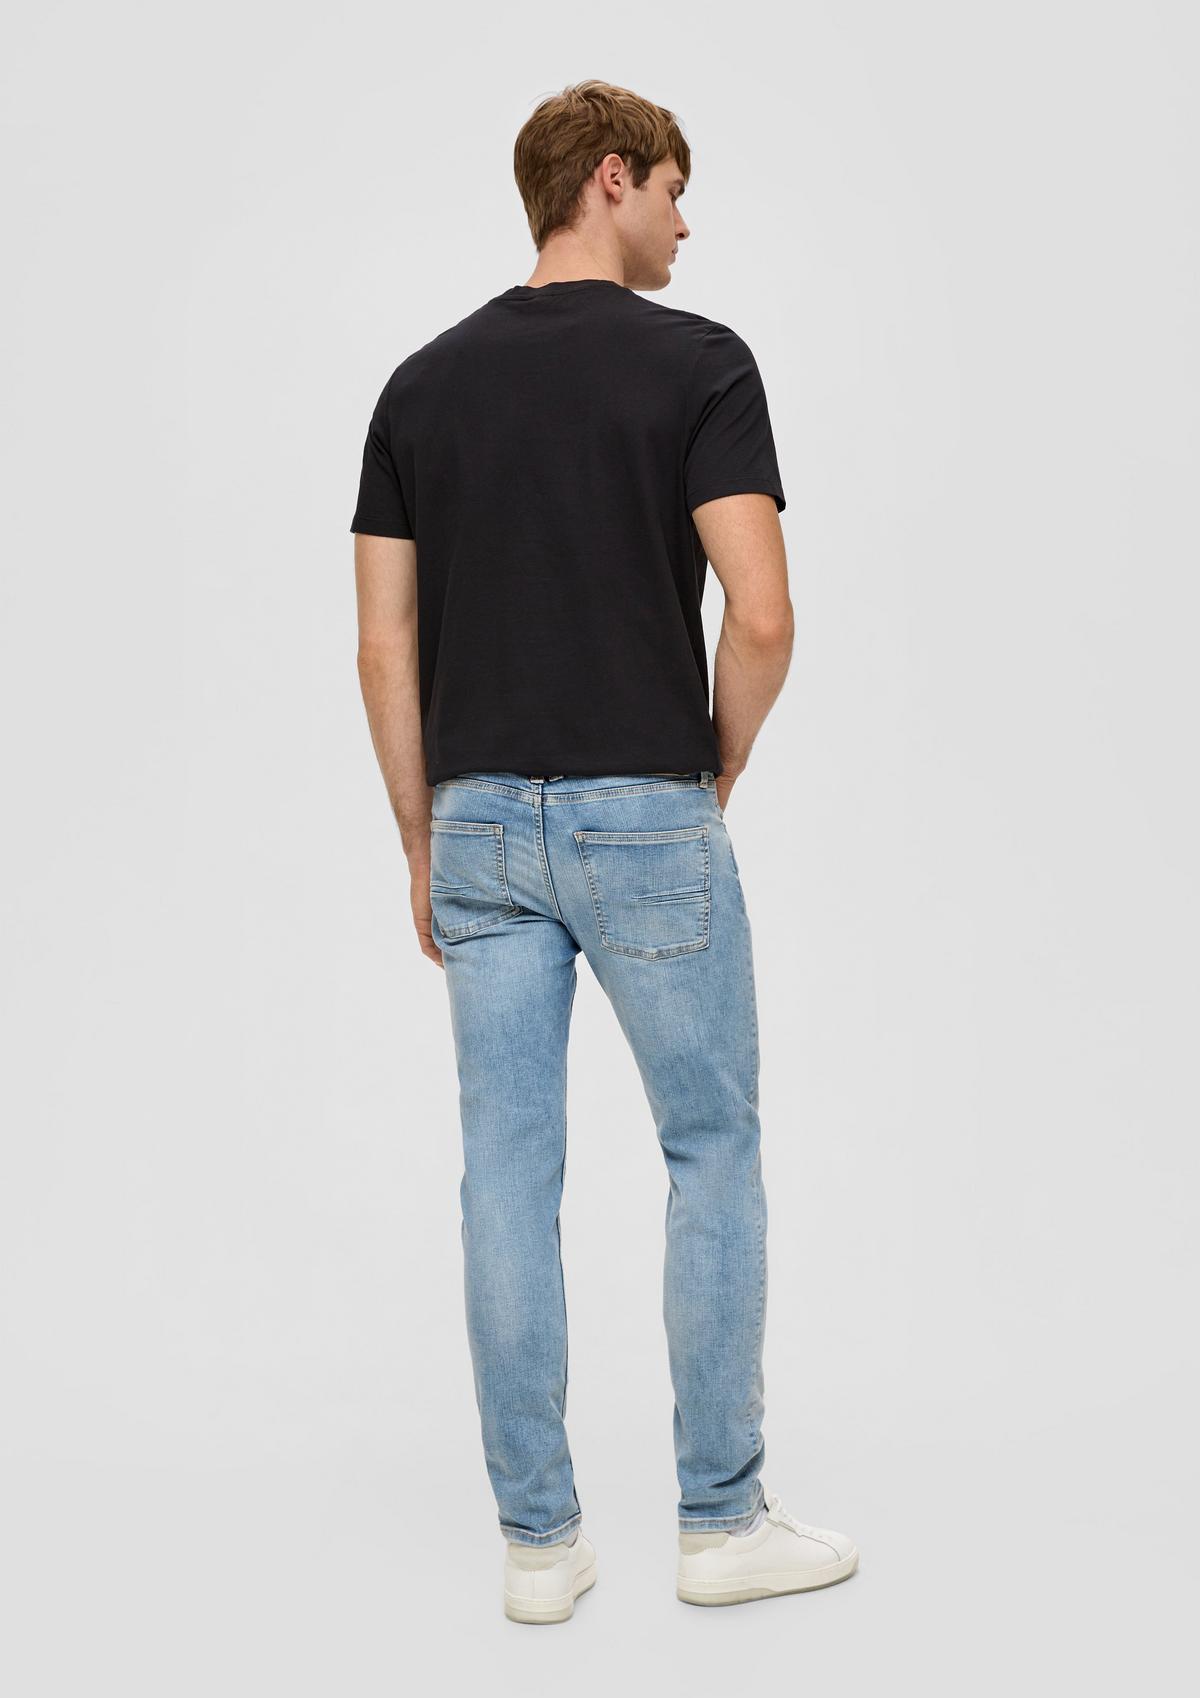 s.Oliver Jeans met contrasterende details aan de zijkant